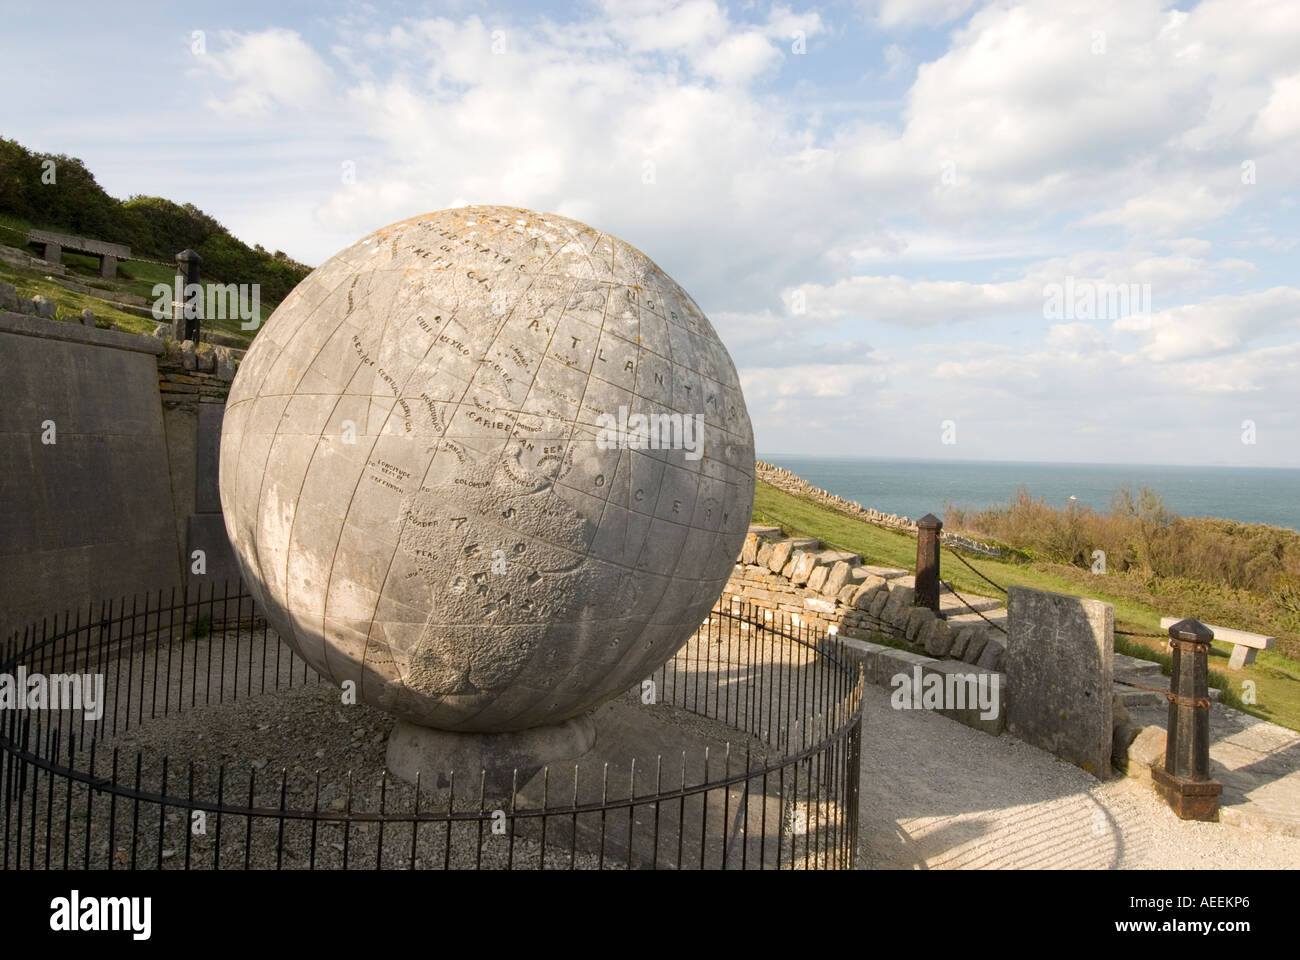 Le Grand Globe en pierre de Portland dans le parc Durlston Swanage Dorset England UK Banque D'Images